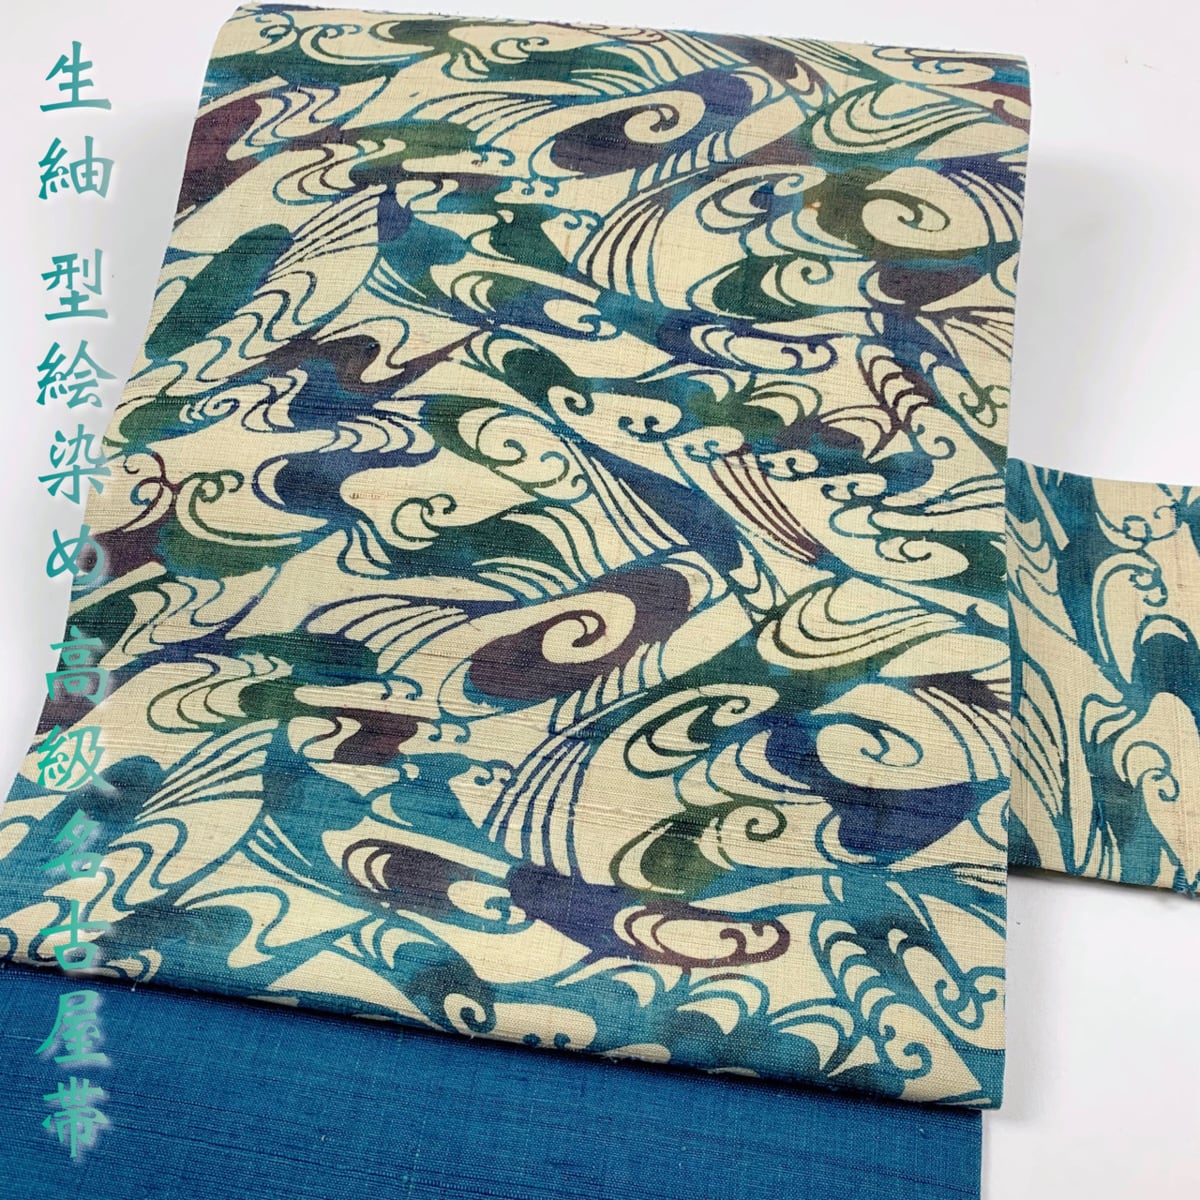 生紬 型染め 型染め 高級 名古屋帯 波 生成り ターコイズブルー 青 緑